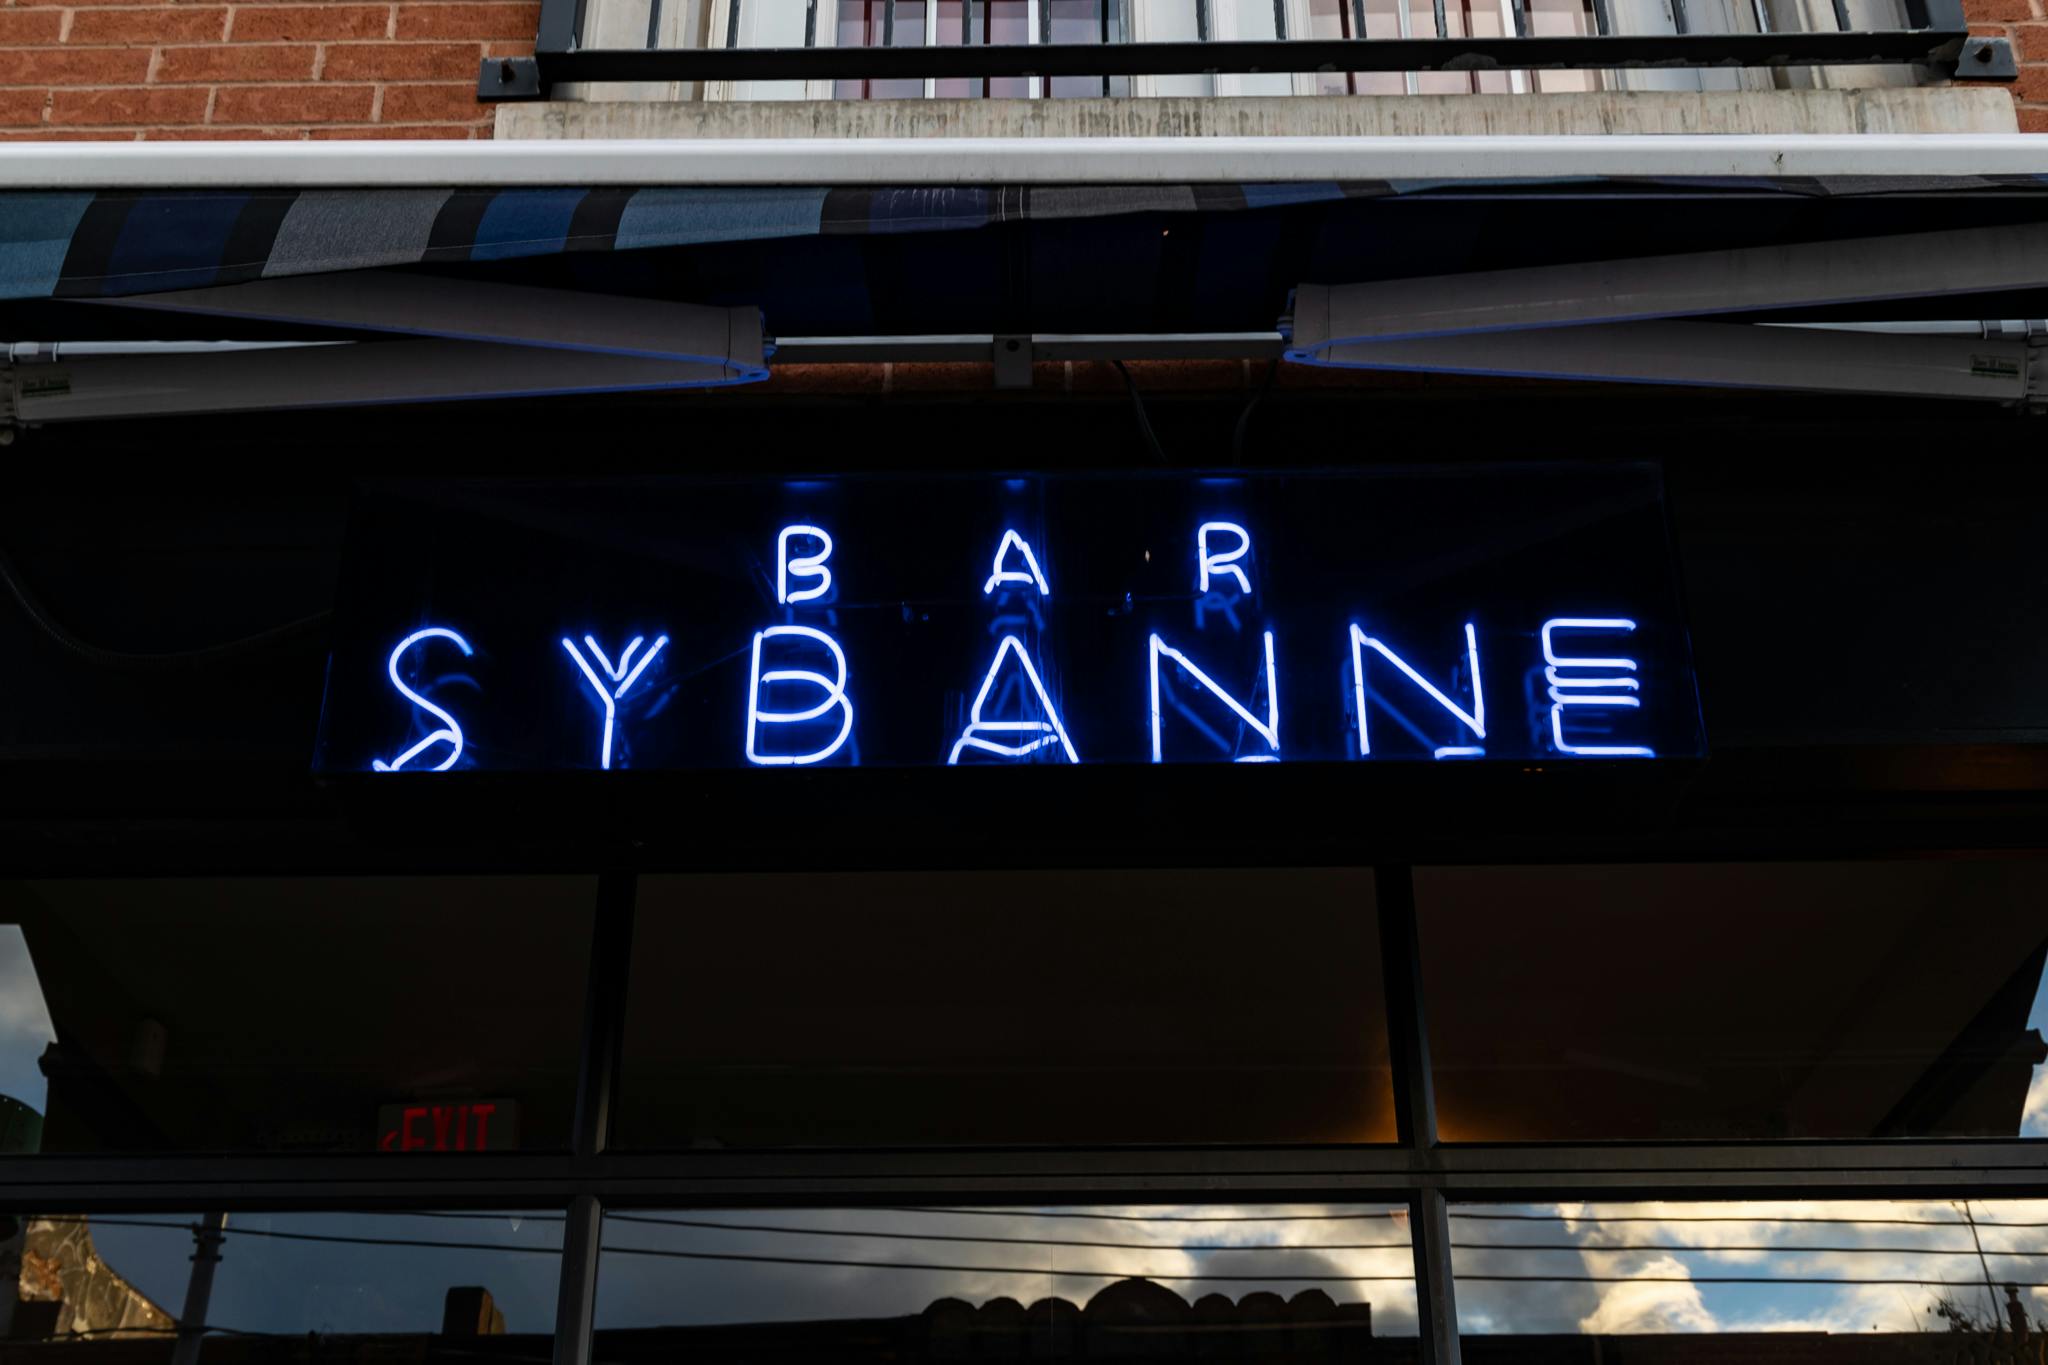 Bar Sybanne signage